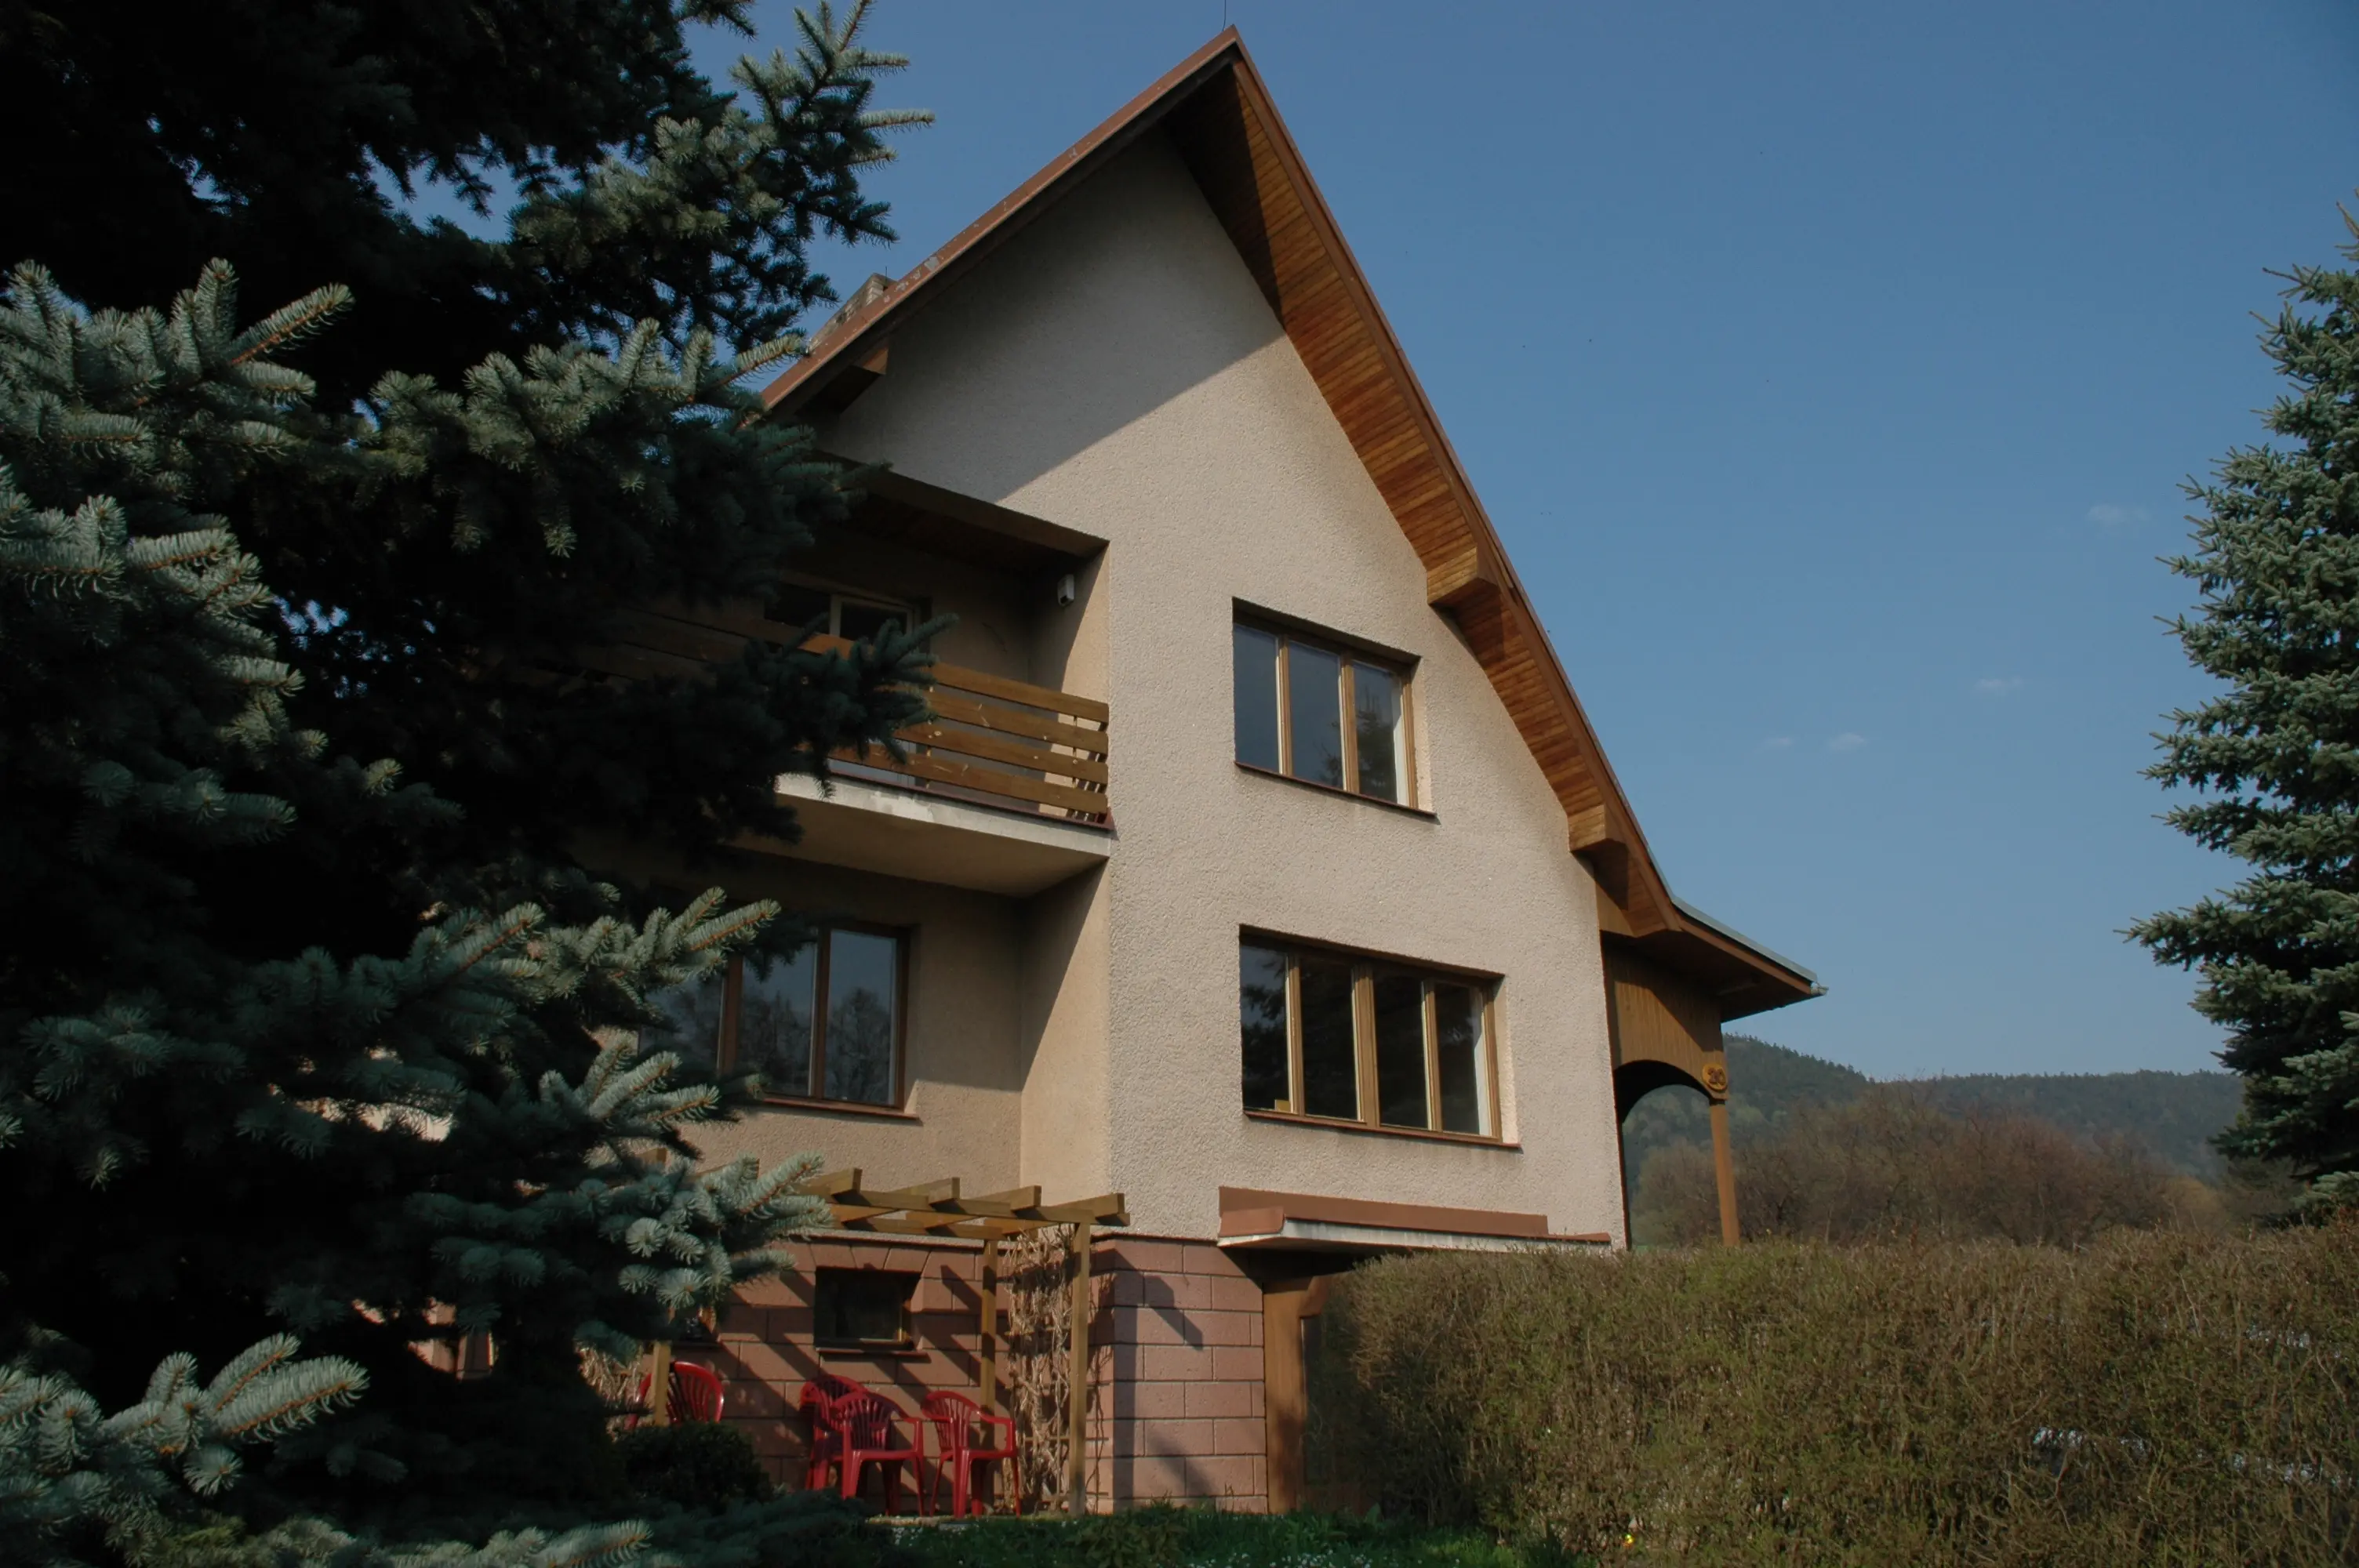 Ruim vakantiehuis, 4 slaapkamers, op gewilde locatie nabij Trutnov te koop in Tsjechie